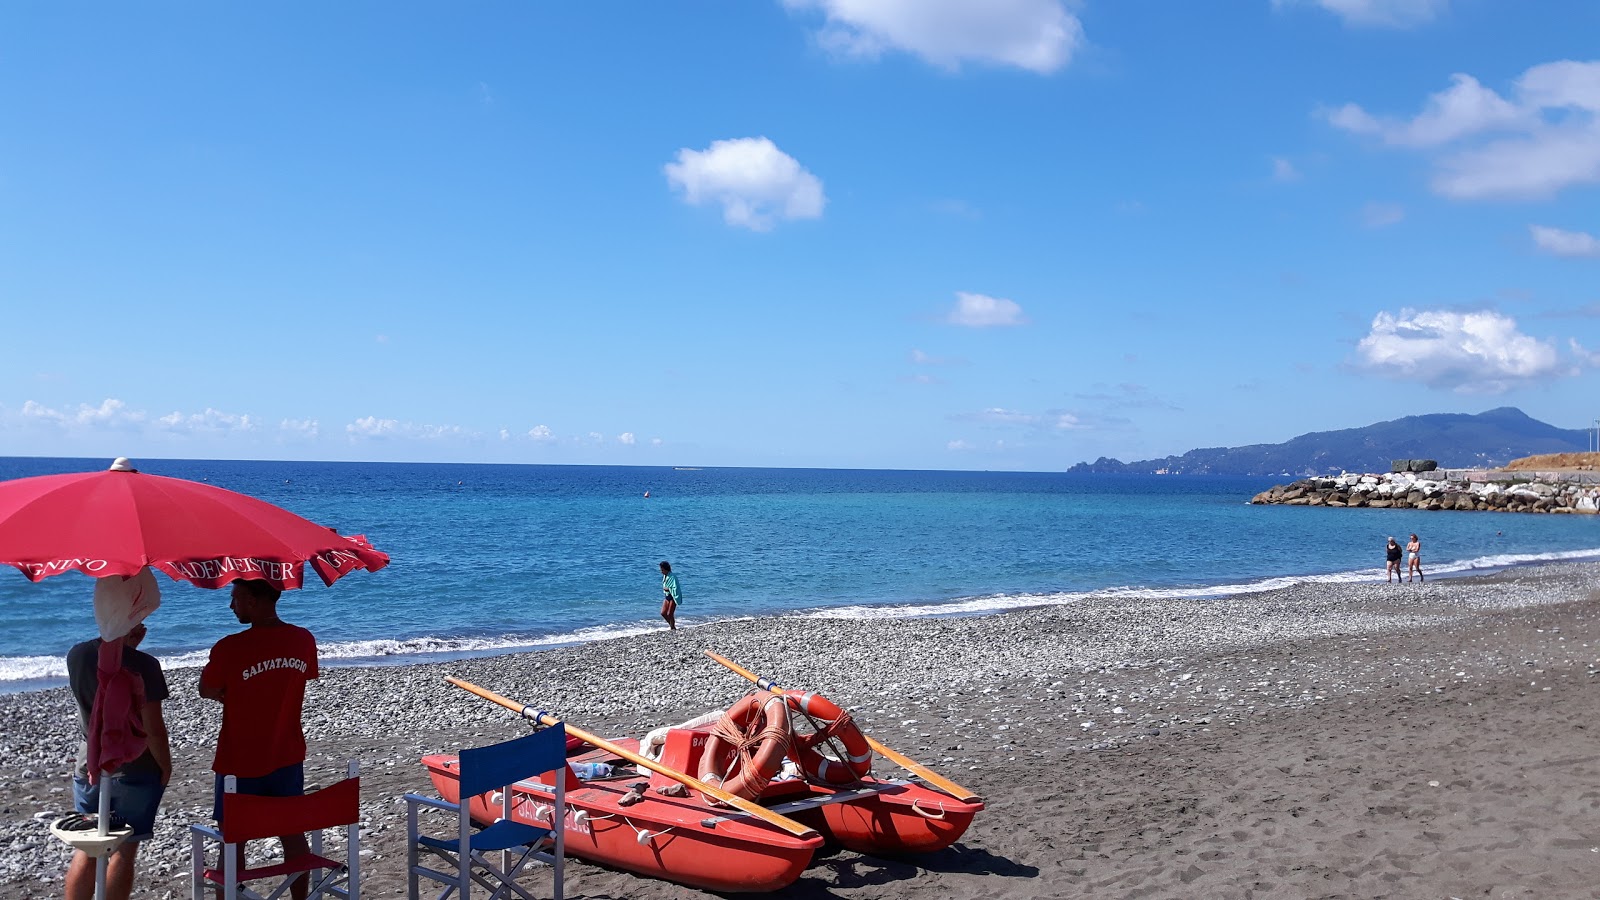 Photo of Spiaggia Tito Groppo with straight shore